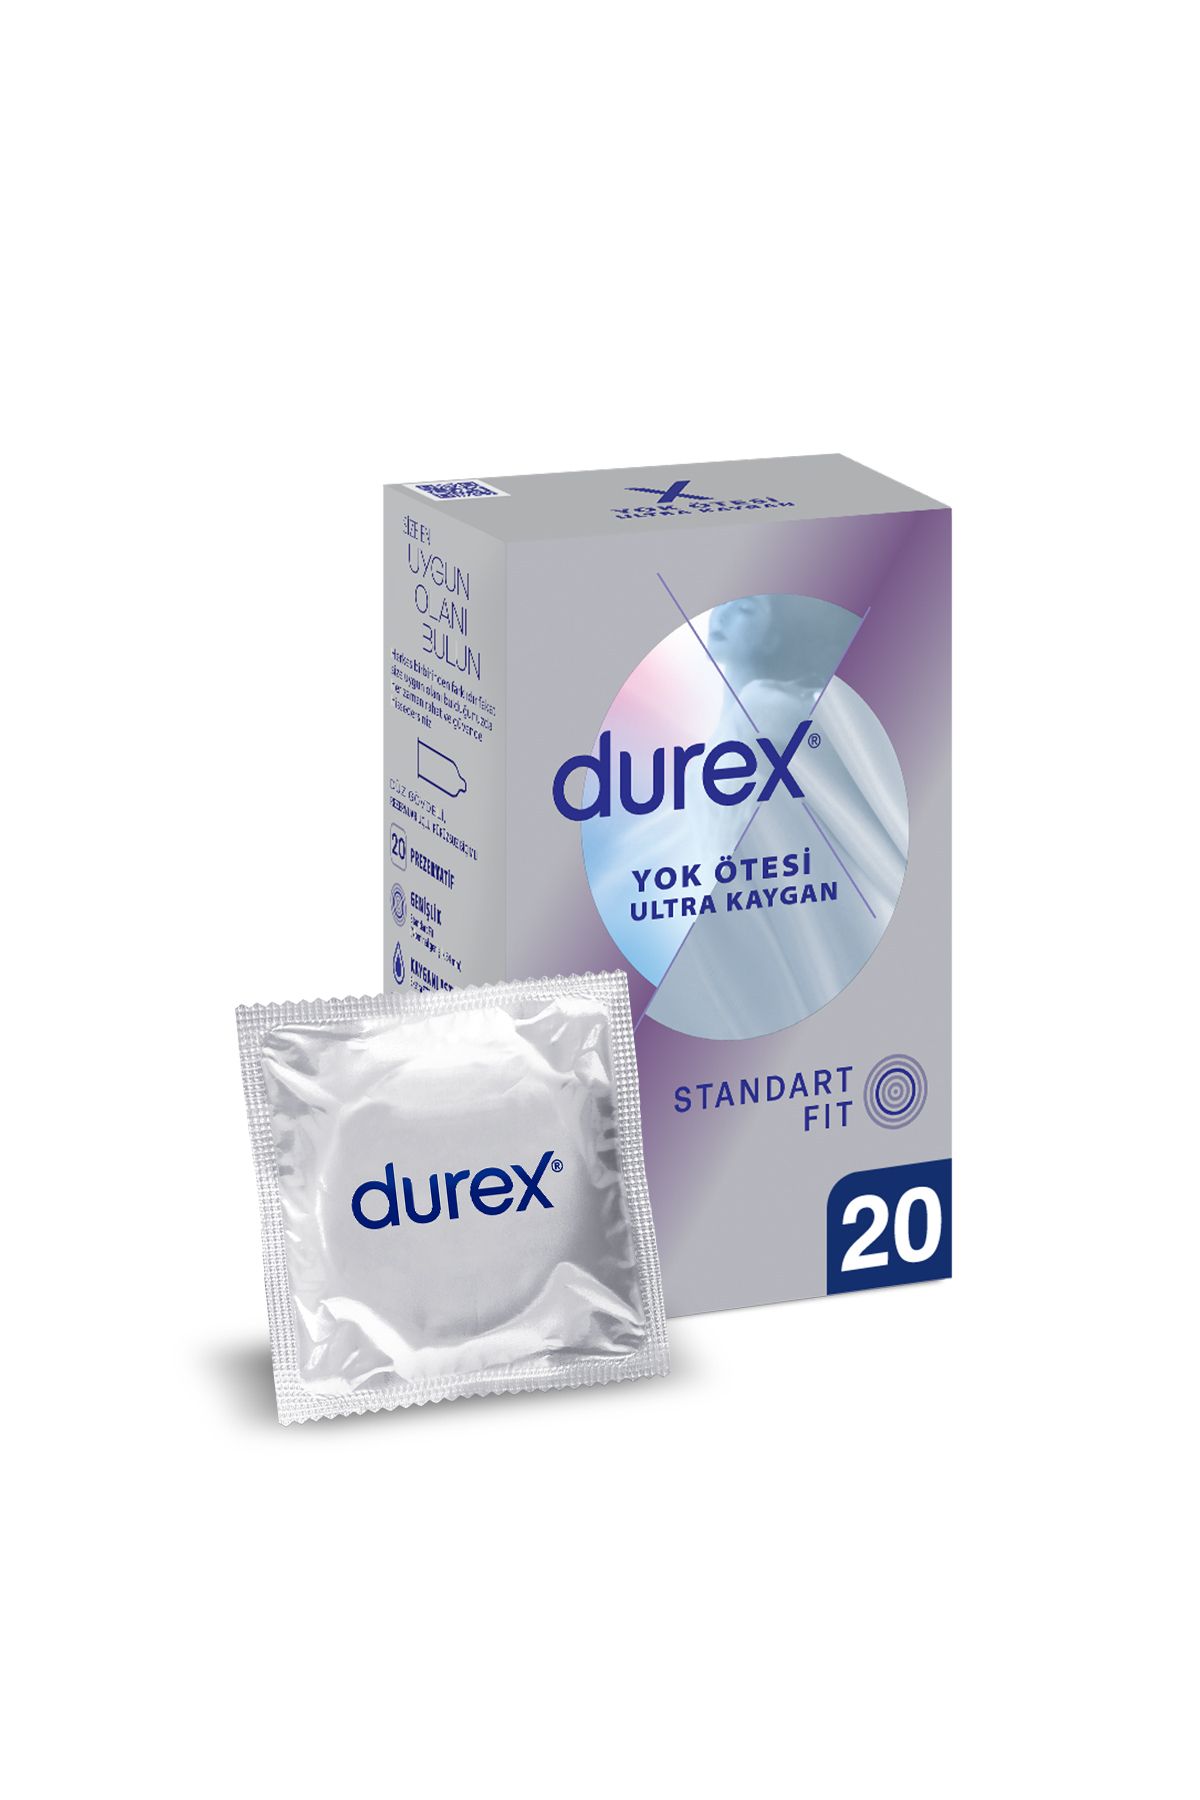 Durex Yok Ötesi Ultra Kaygan İnce Prezervatif 20'li